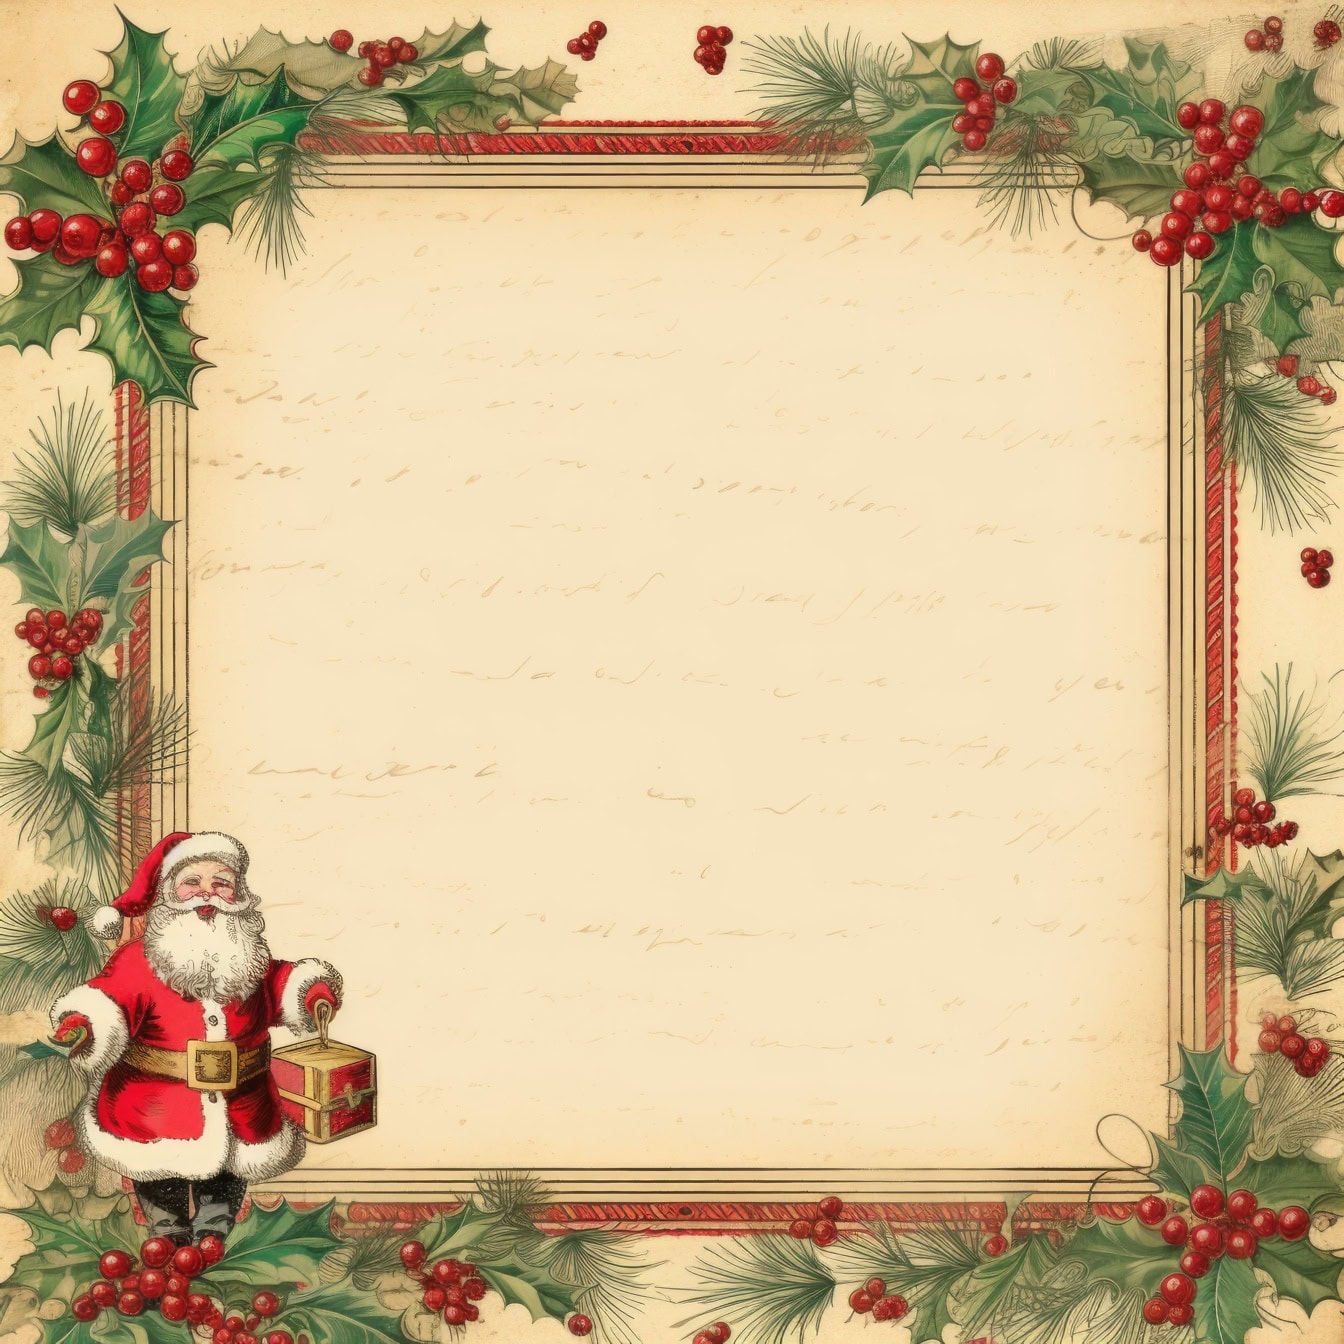 ヒイラギの花輪のフレームとサンタクロースとレトロなスタイルの伝統的なクリスマスグリーティングカードテンプレート